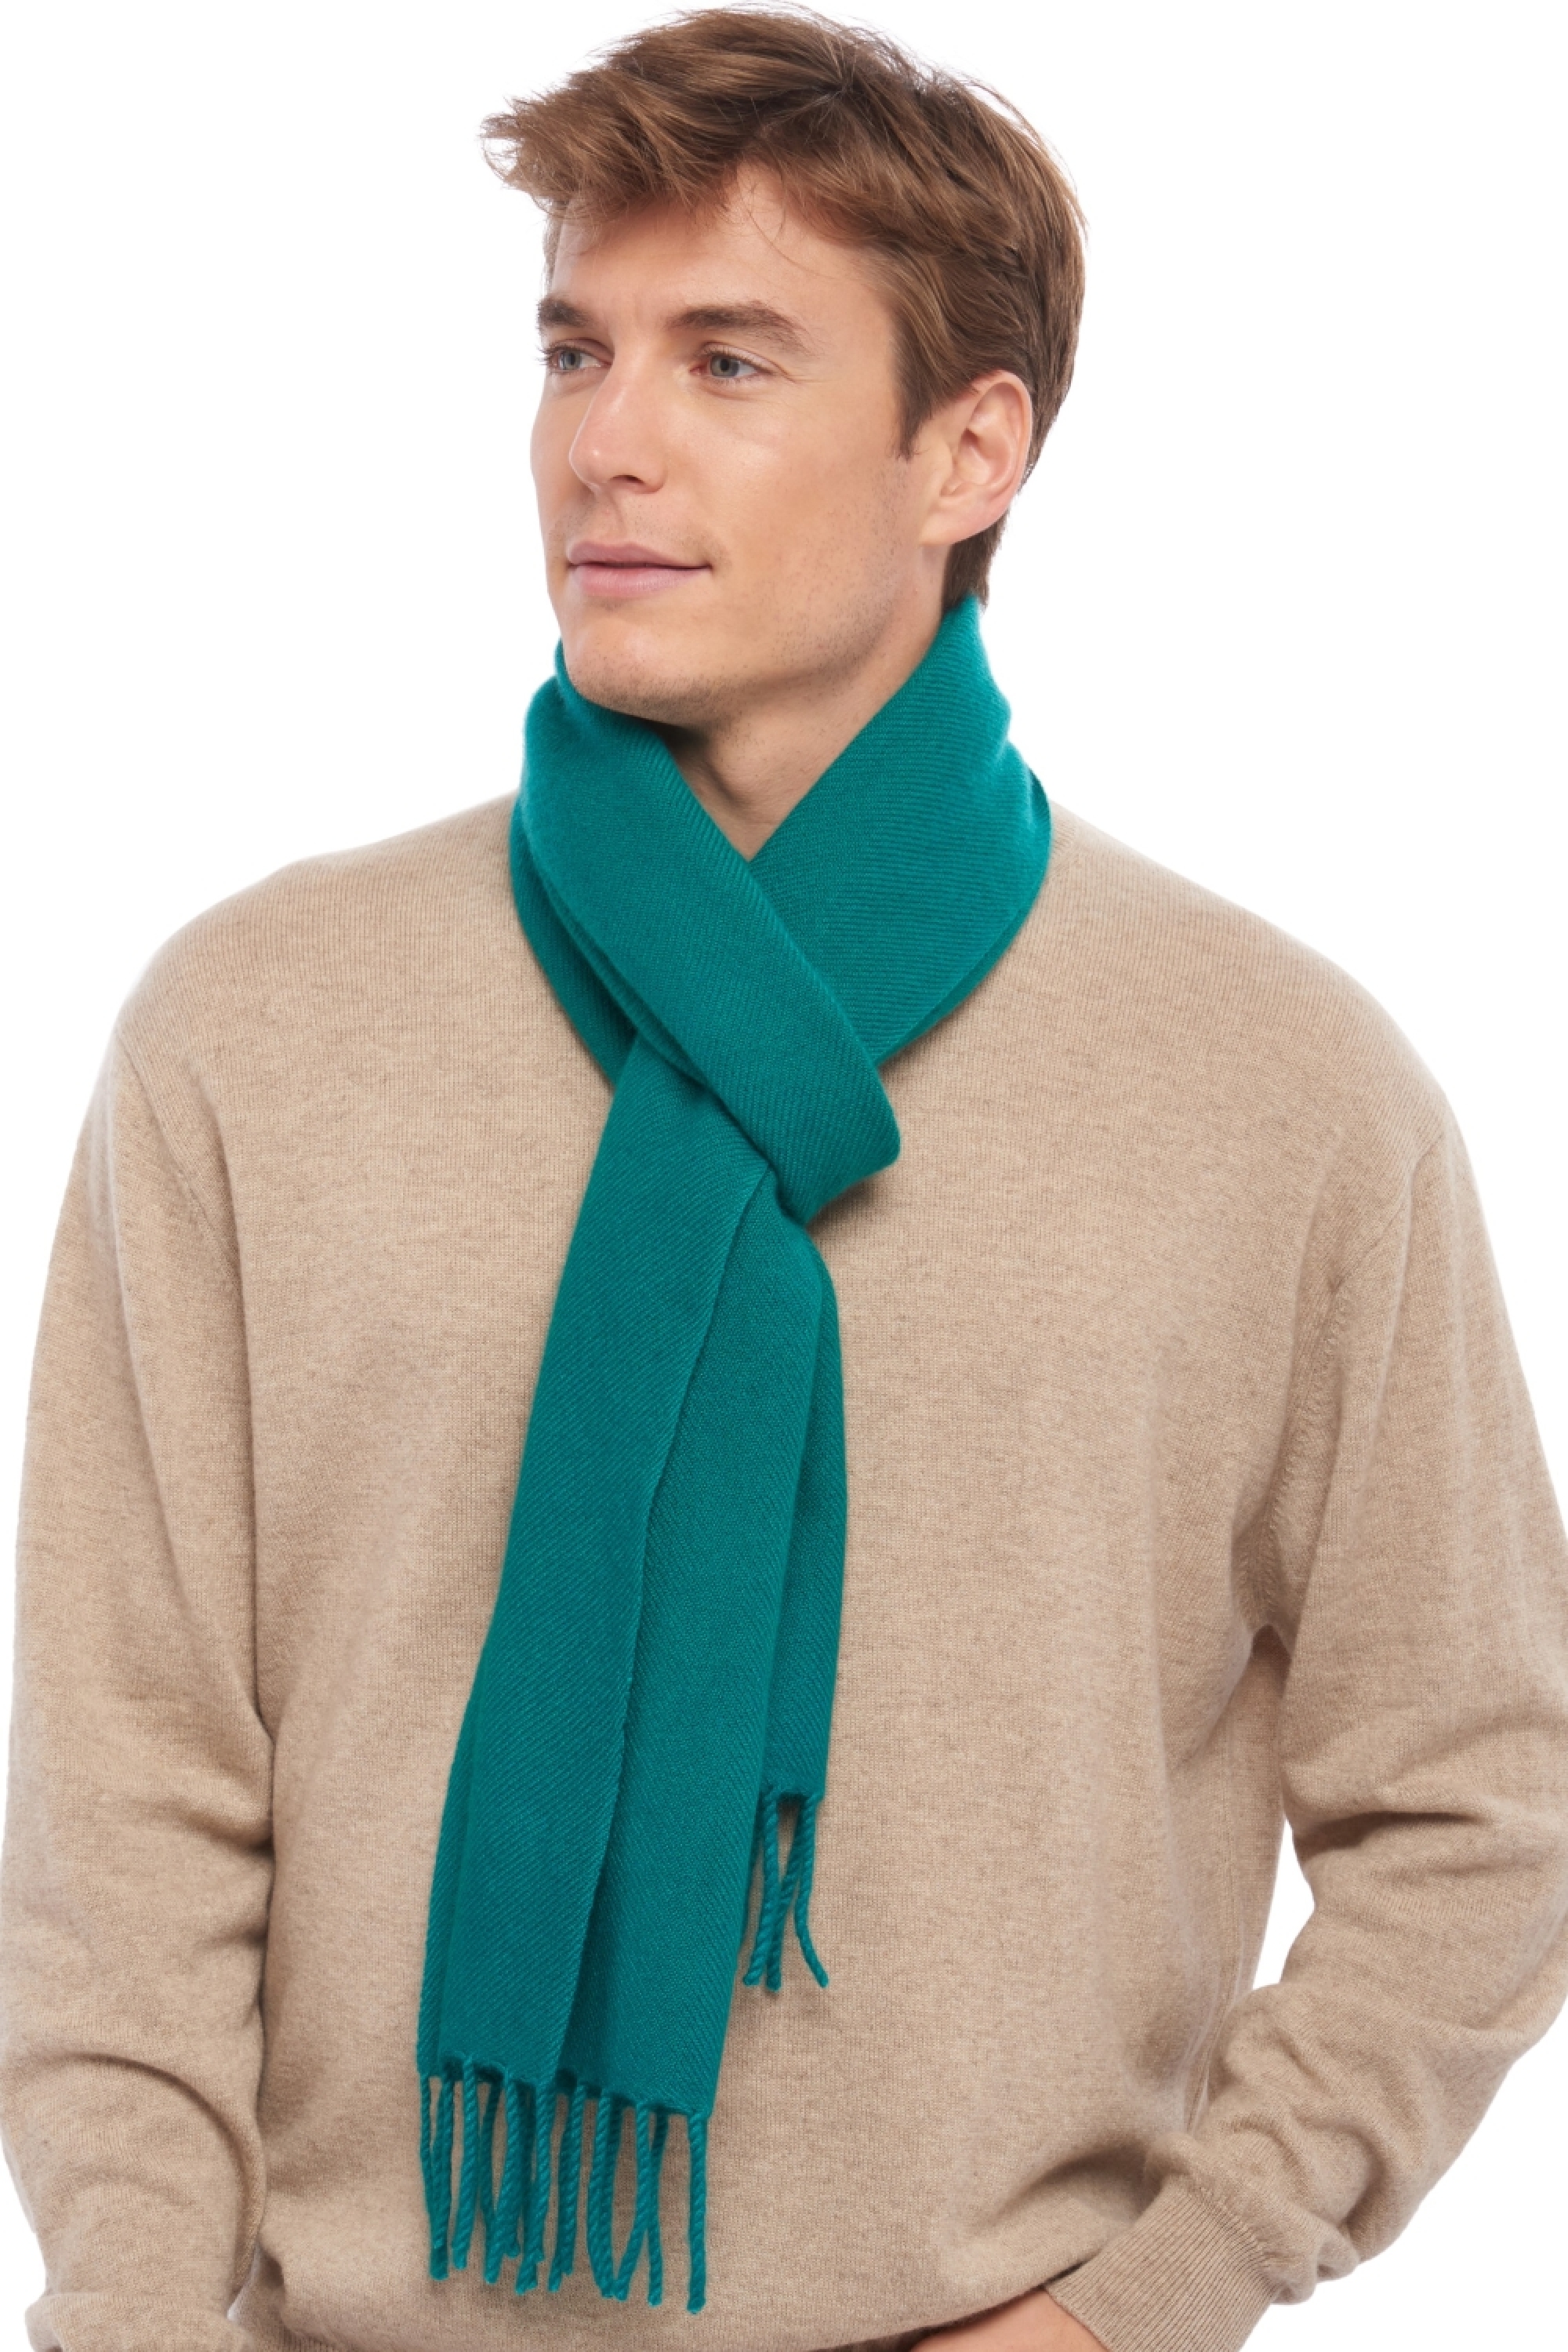 Cashmere accessories scarves  mufflers zak200 evergreen 200 x 35 cm